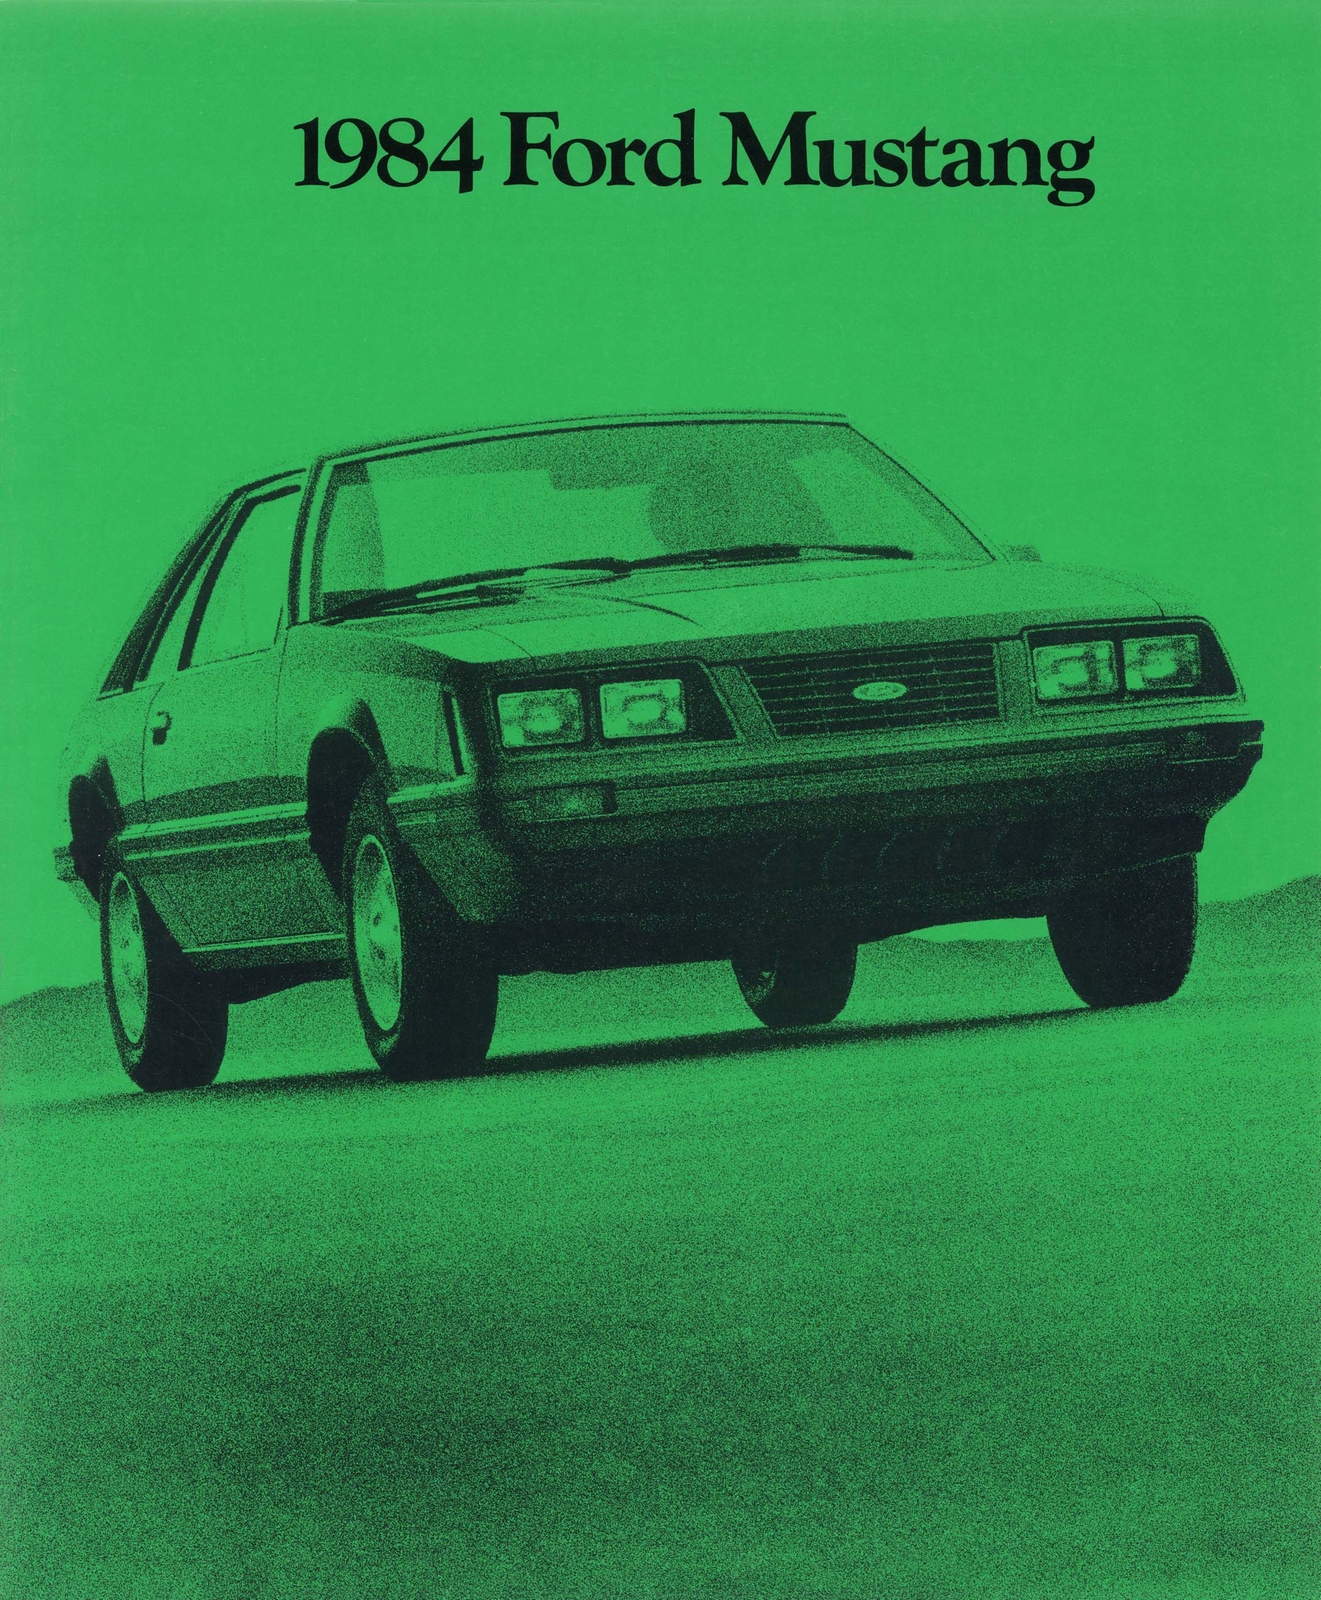 n_1984 Ford Mustang-01.jpg